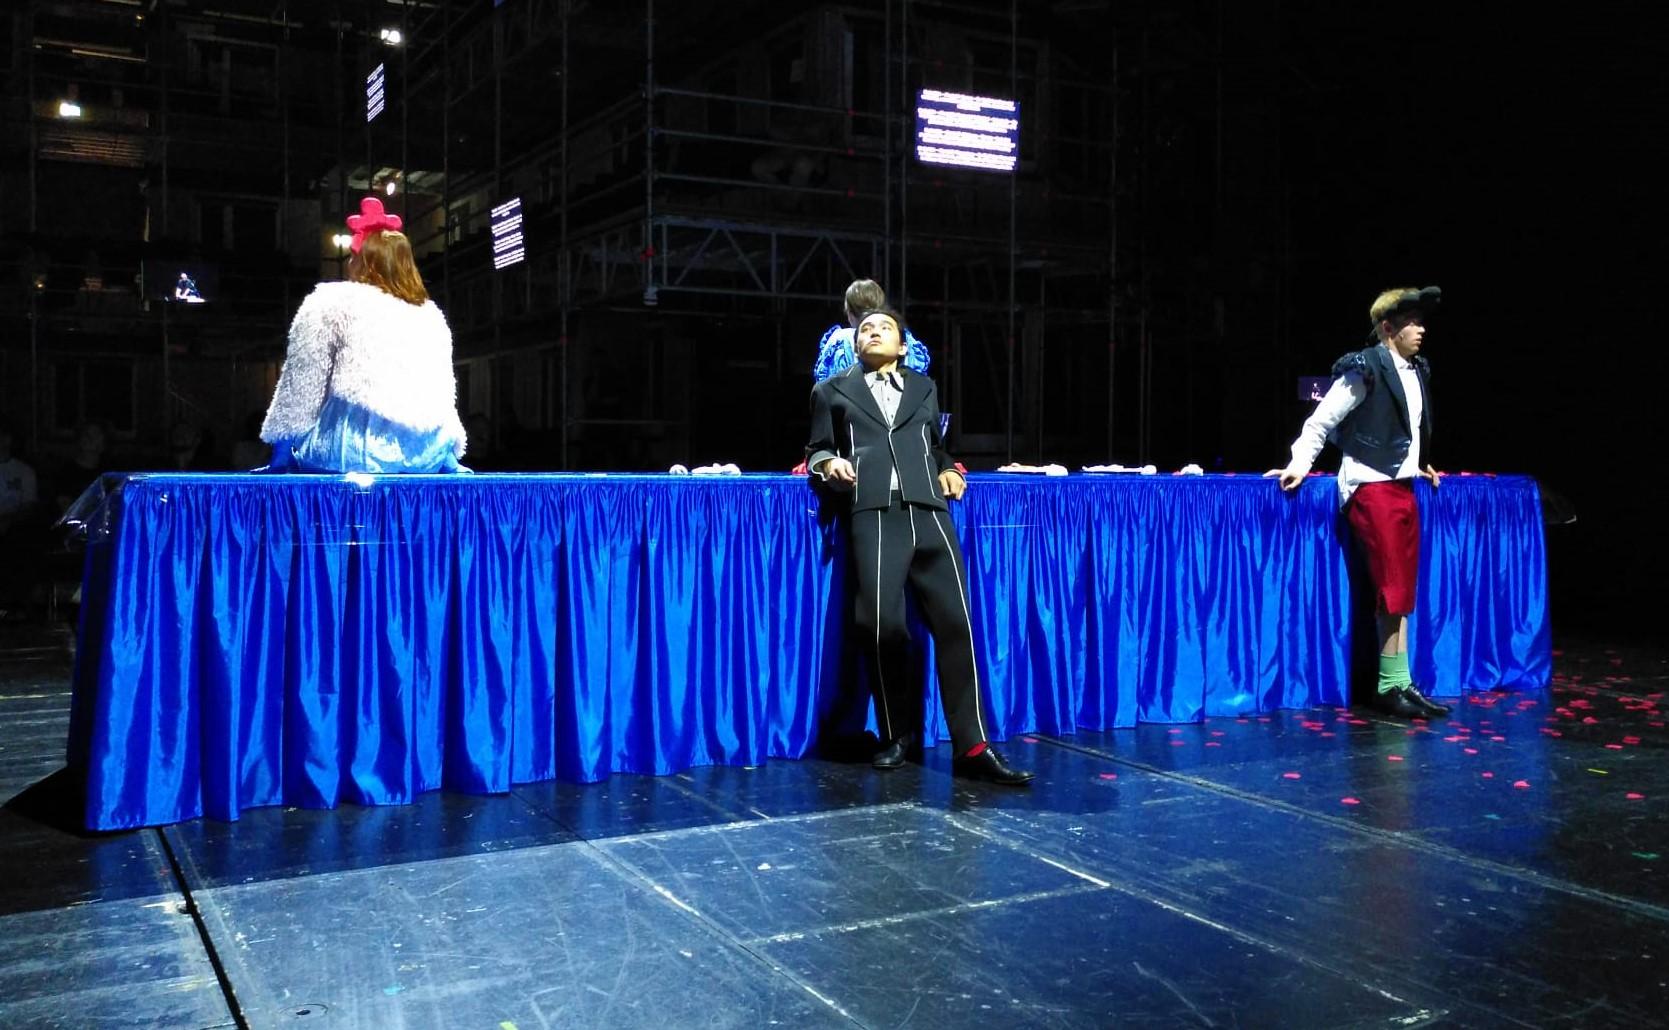 Auf einer Bühne steht ein ca. fünf Meter langer und ein Meter hoher schmaler Tisch, der von einer bodenlangen blauen Satindecke bedeckt ist. Links darauf sitzt eine Person, die von hinten zu sehen ist, mit schulterlangem rötlichem Haar und einer weißen Felljacke. In der Mitte vor dem Tisch steht ein Mann im schwarzen Anzug, er schaut gelangweilt nach rechts links oben. Direkt dahinter sitzt eine weitere Person auf dem Tisch mit dem Rücken zur Kamera.  Weiter rechts vor dem Tisch steht ein zweiter Mann.